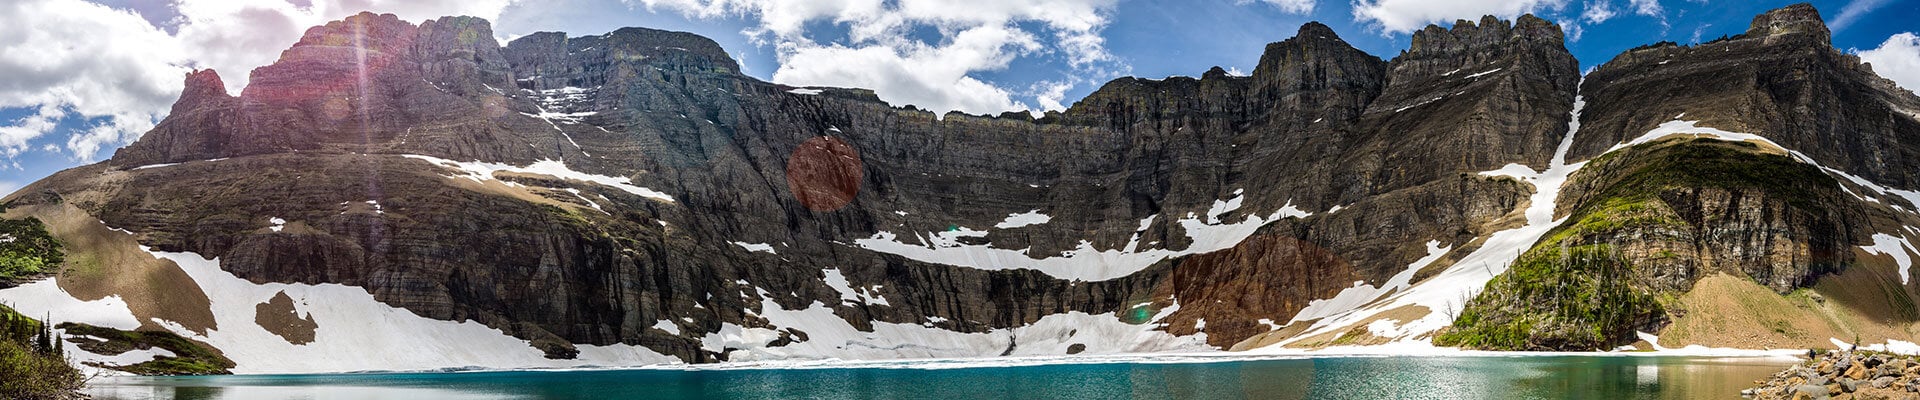 iceberg-lake-montana